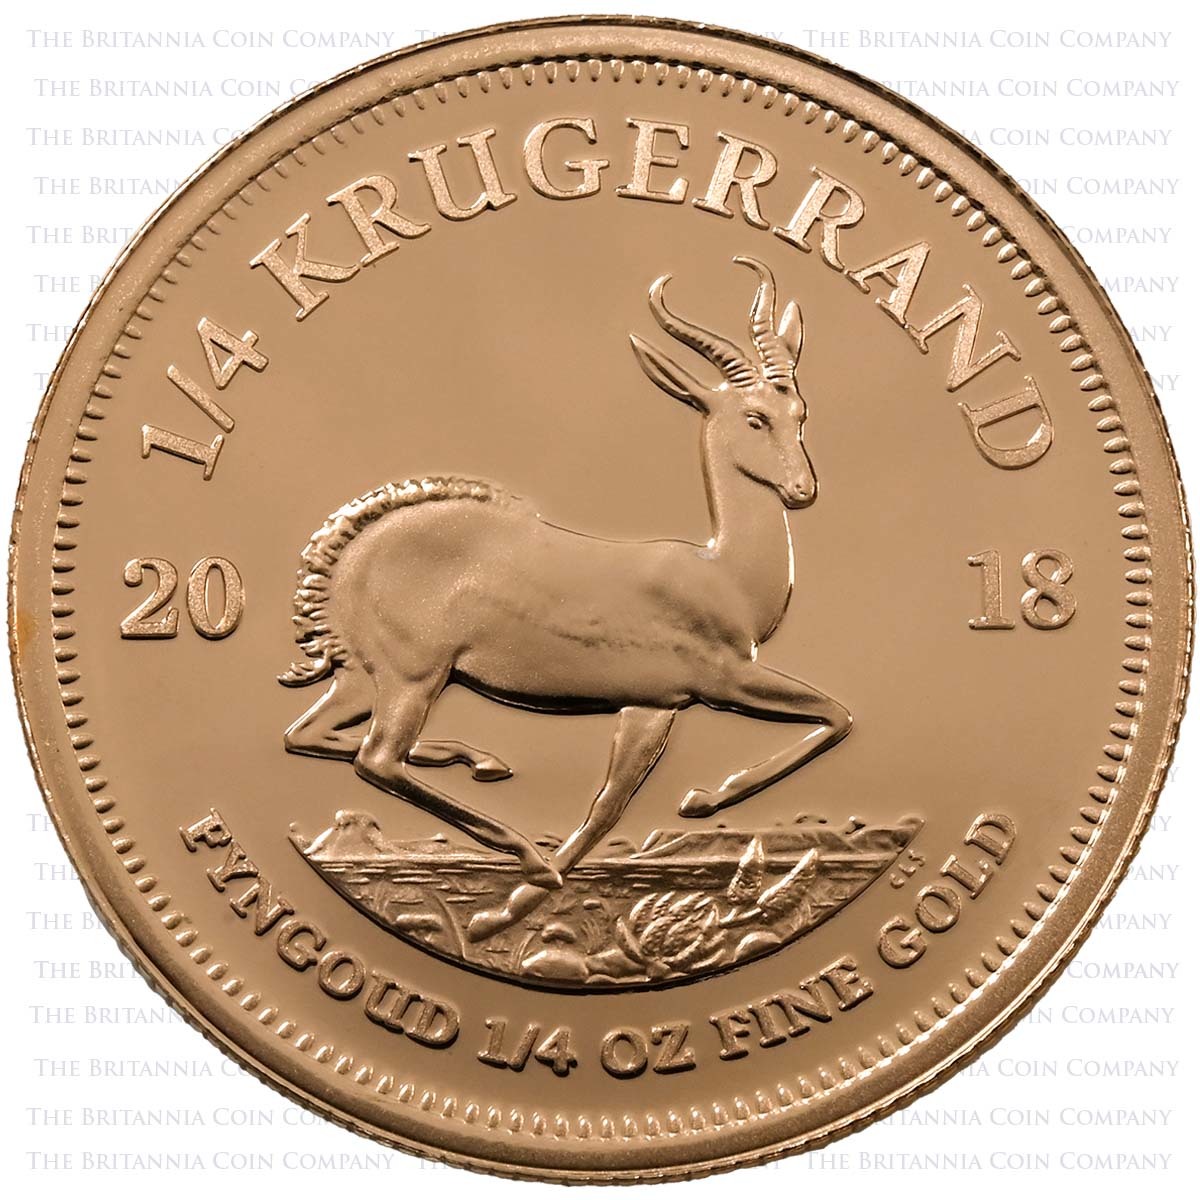 2018 4 Coin Fractional Krugerrand Set Gold Proof Reverse